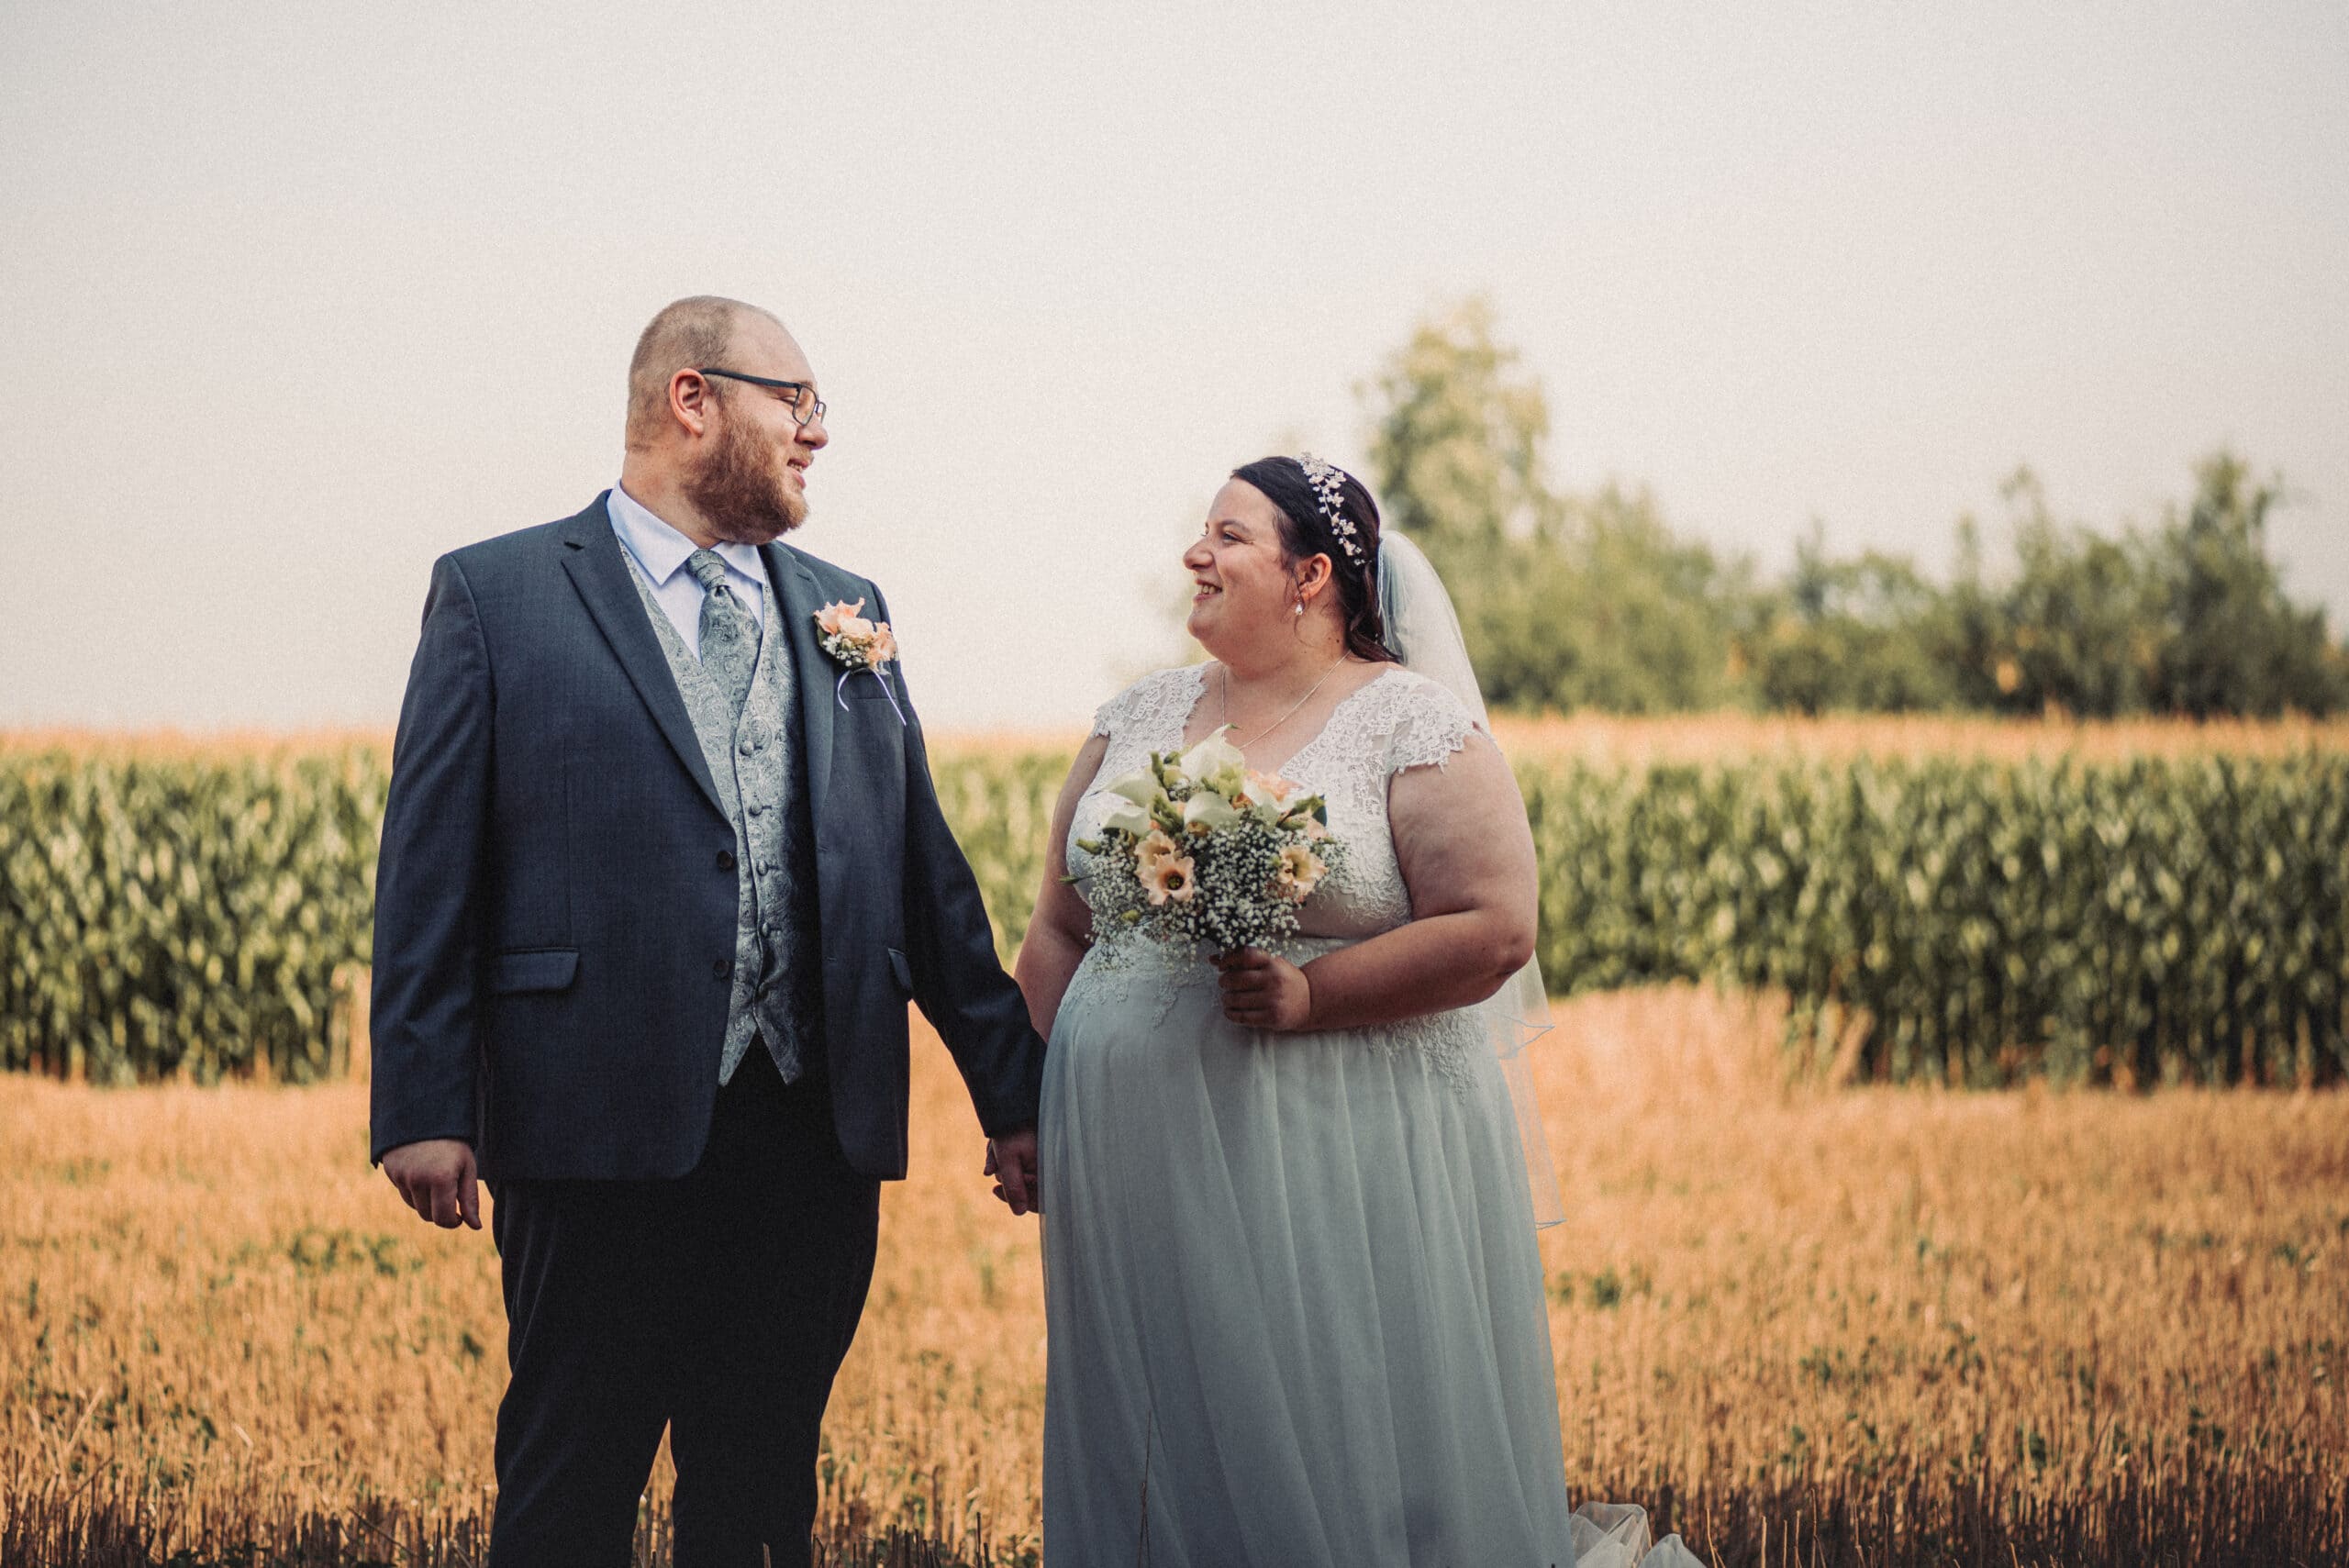 Das lachende Brautpaar beim Hochzeitsshooting in einem Feld in Gablingen.